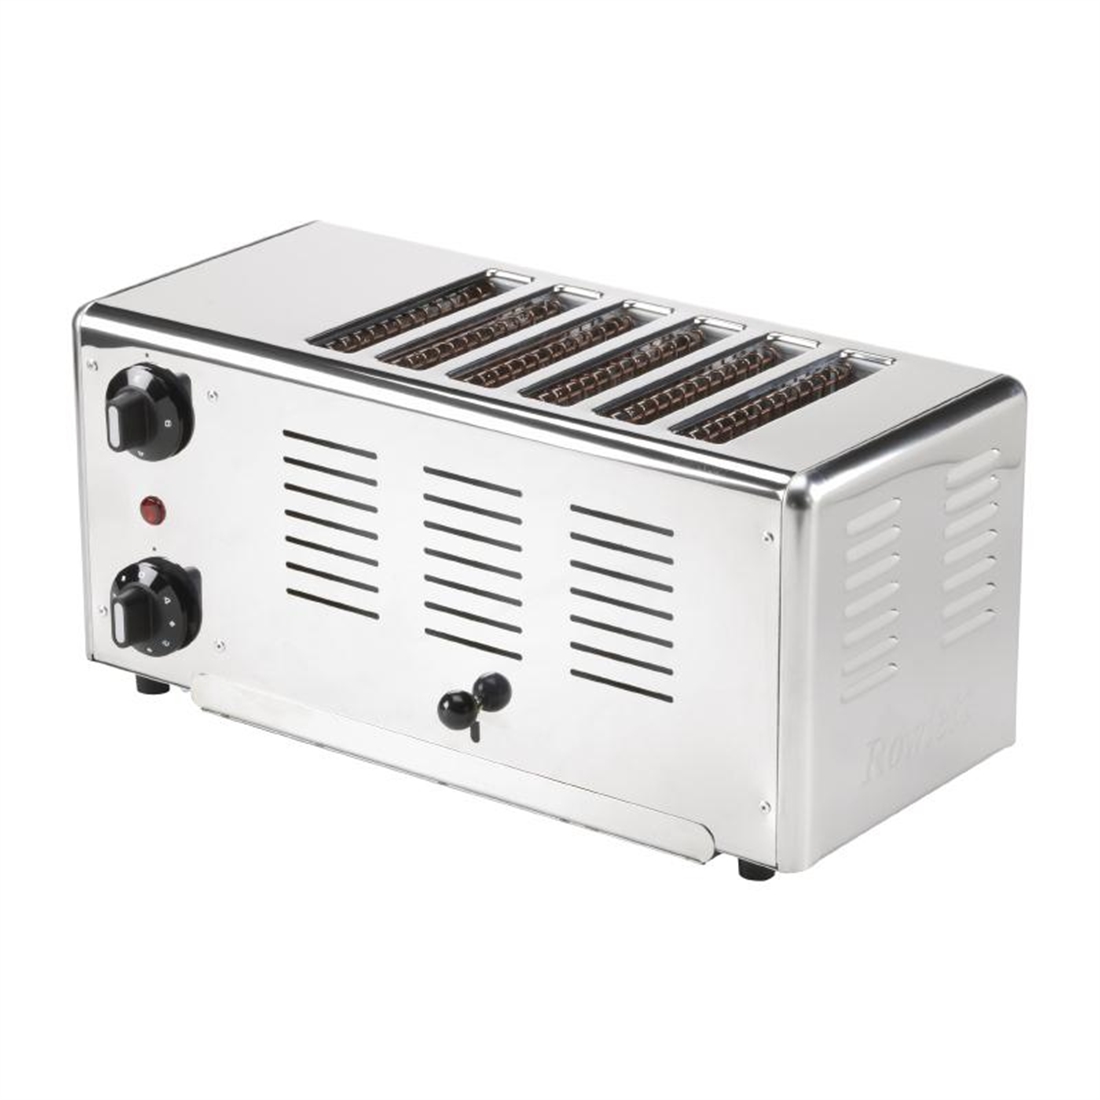 Rowlett Premier 6 Slot Toaster